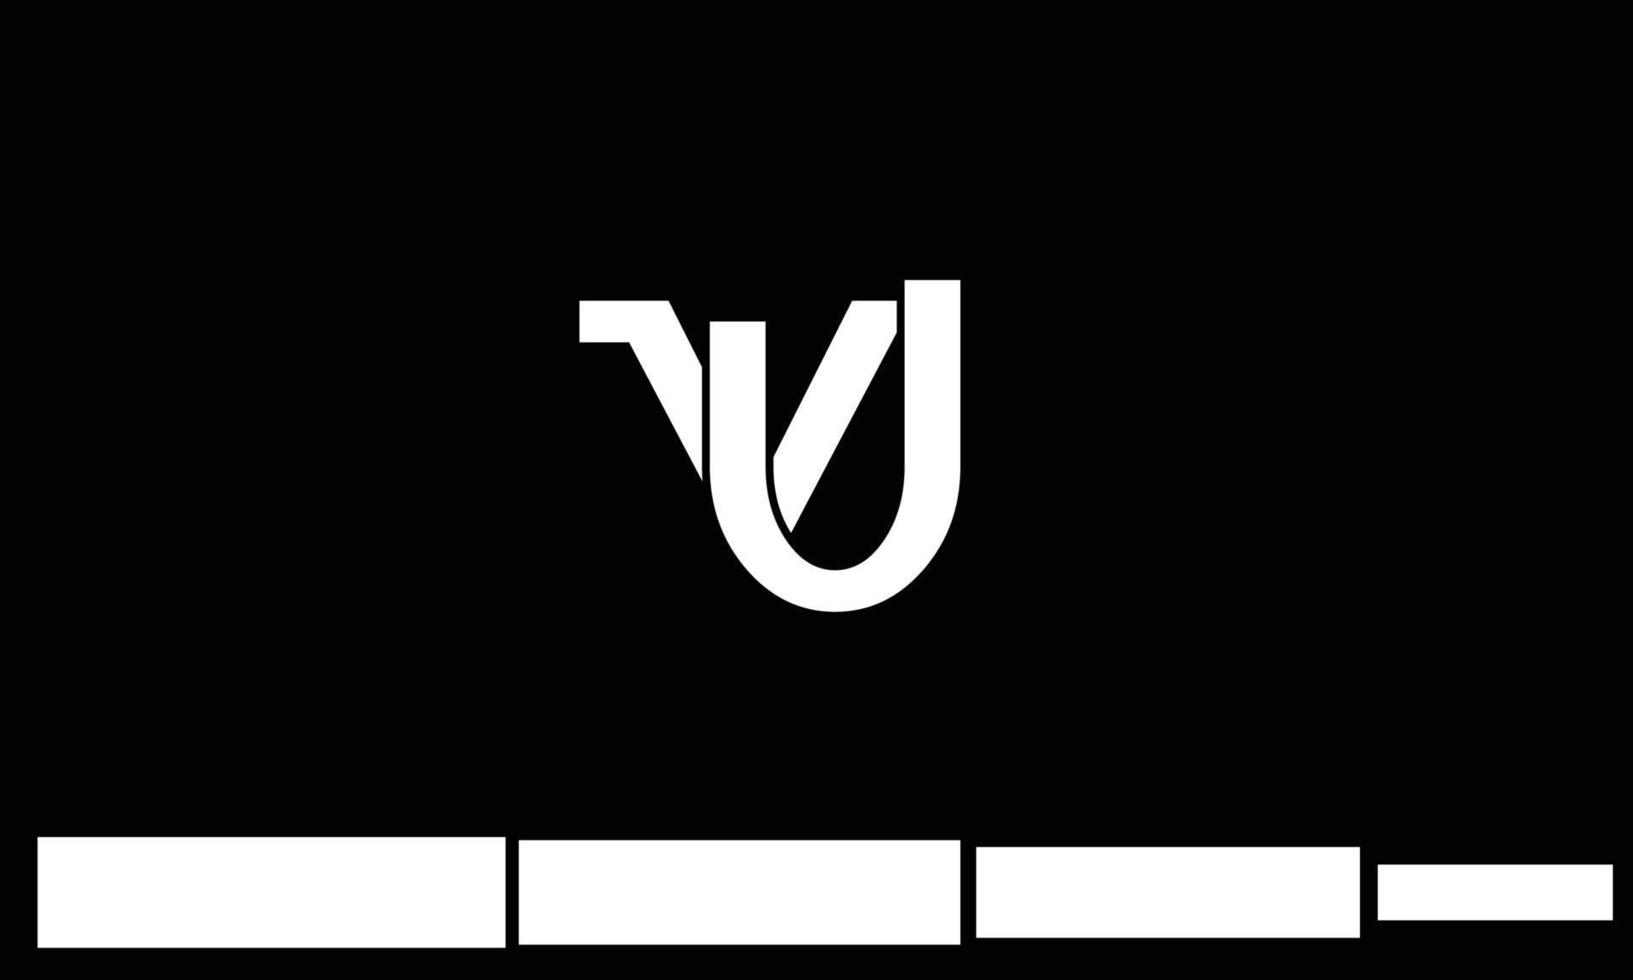 alfabetet bokstäver initialer monogram logotyp vu, uv, v och u vektor